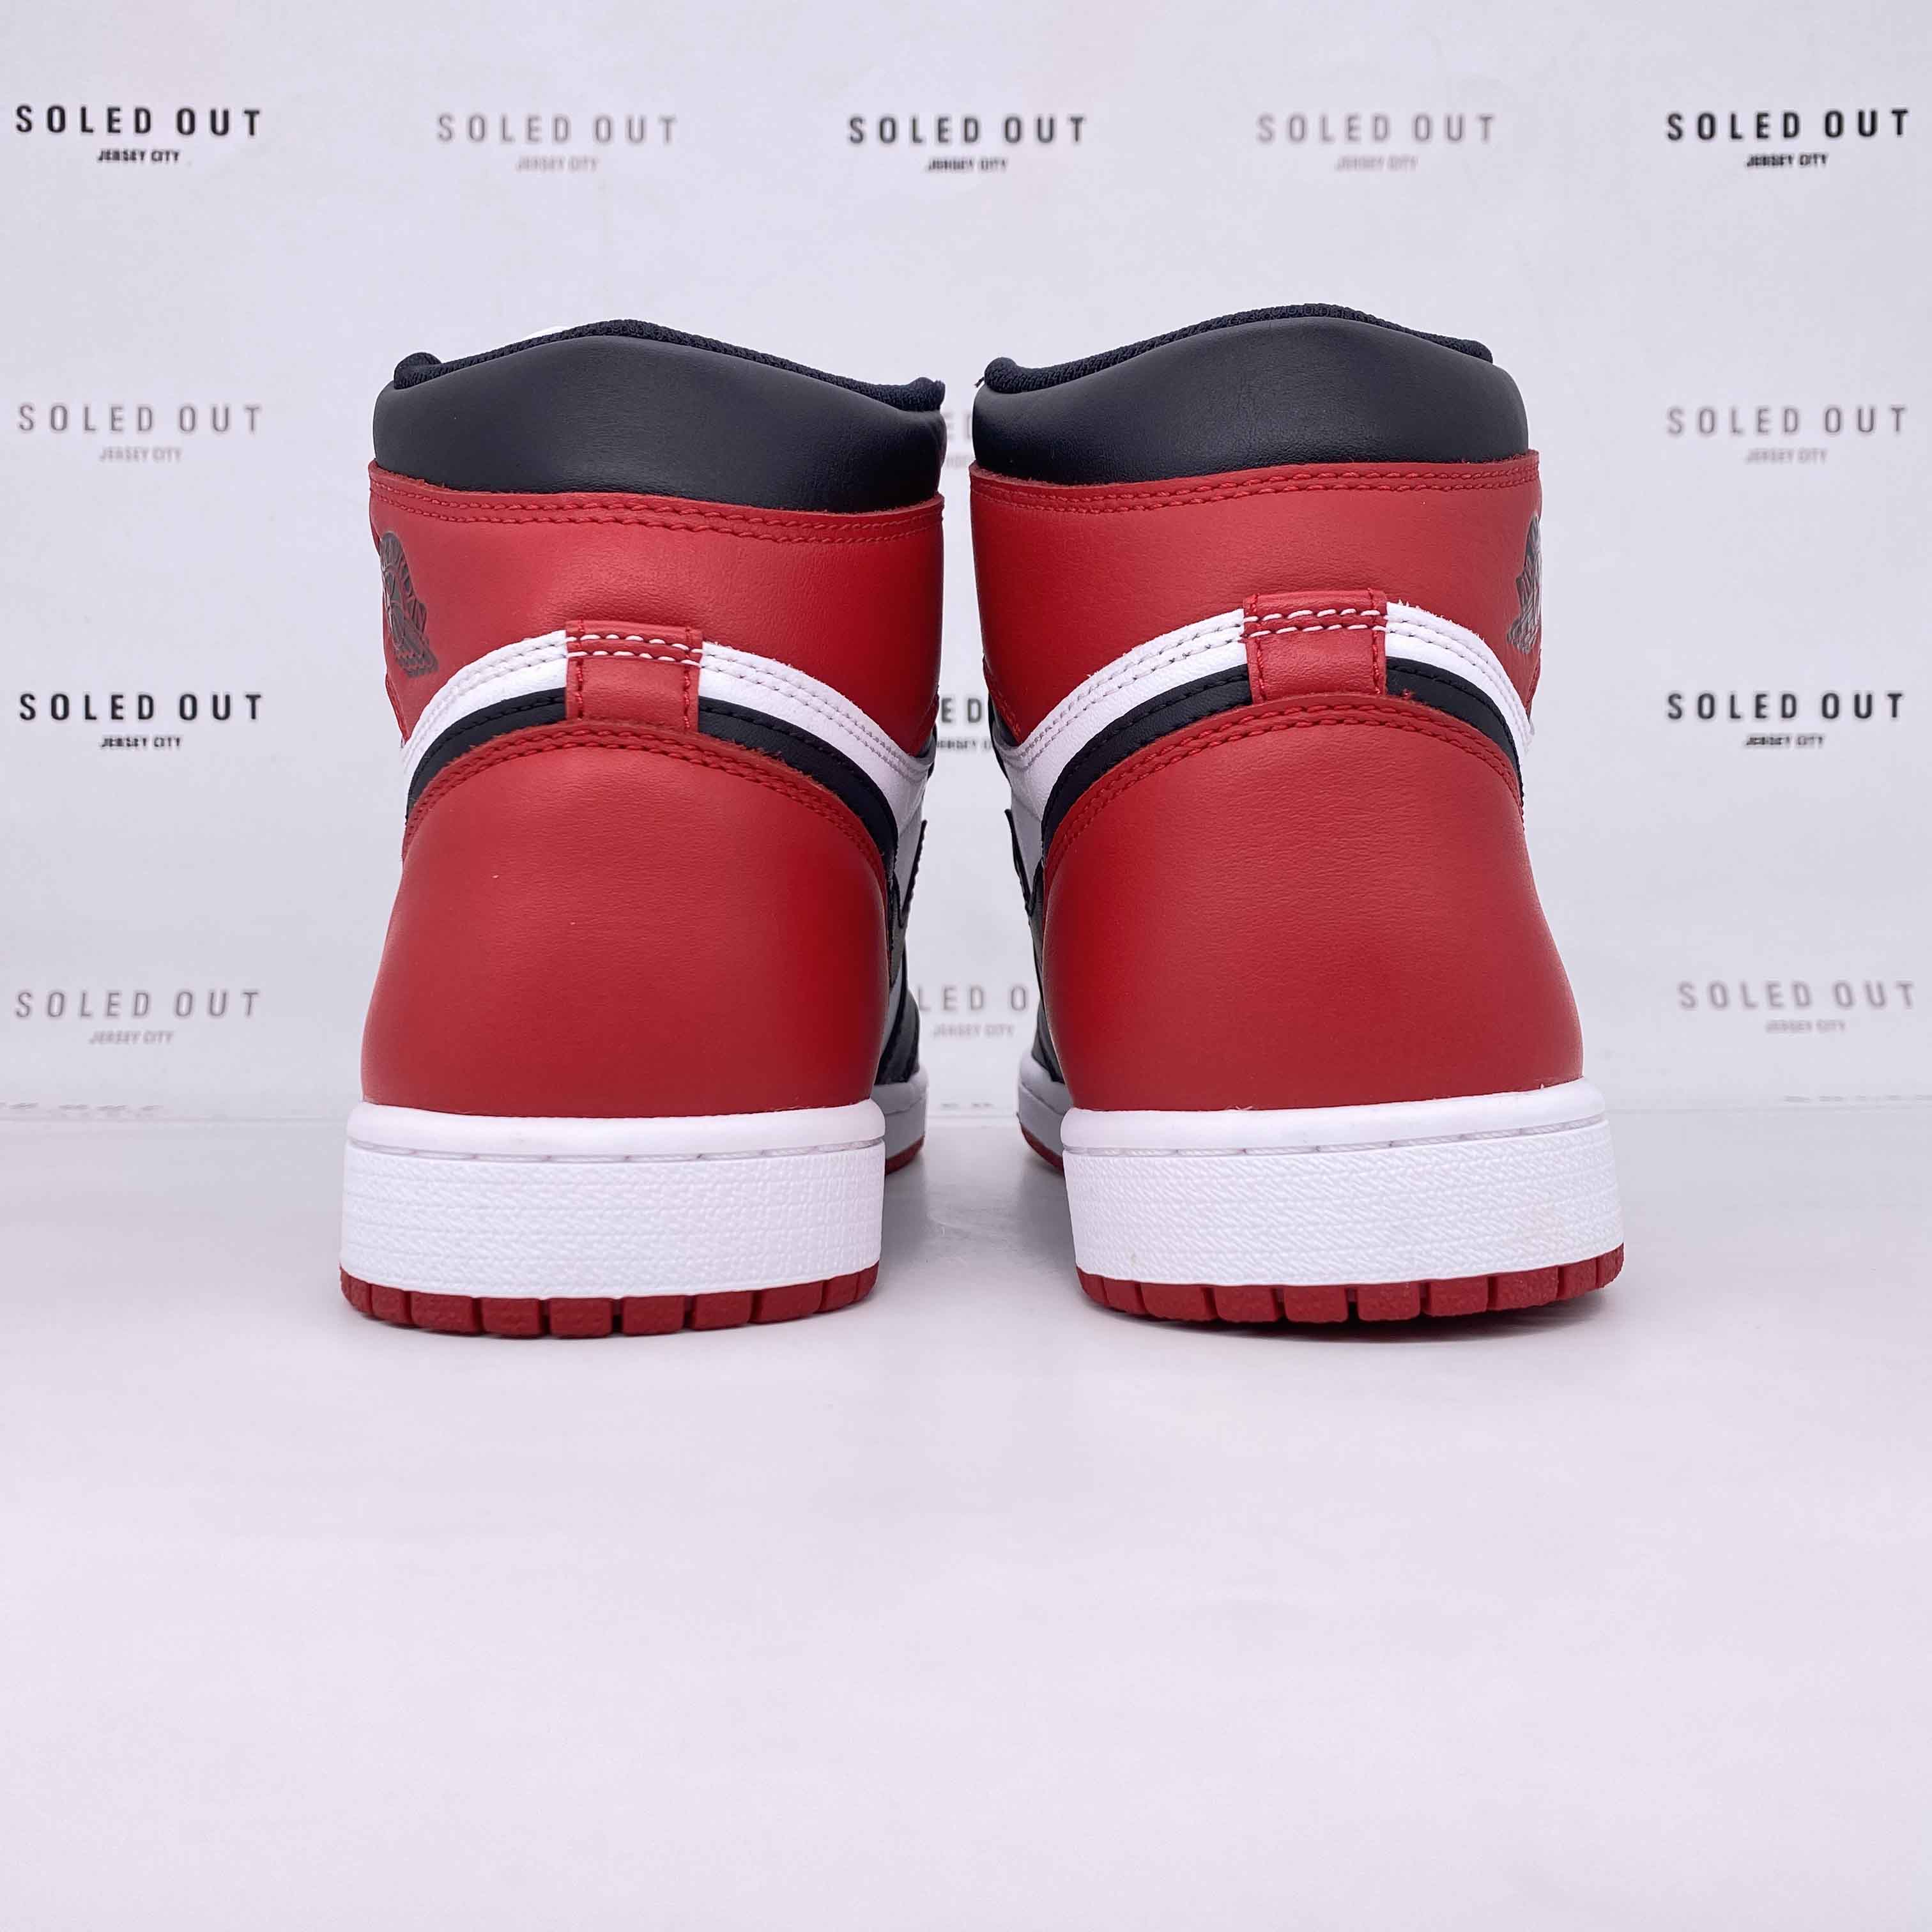 Air Jordan 1 Retro High OG &quot;Black Toe&quot; 2016 New Size 8